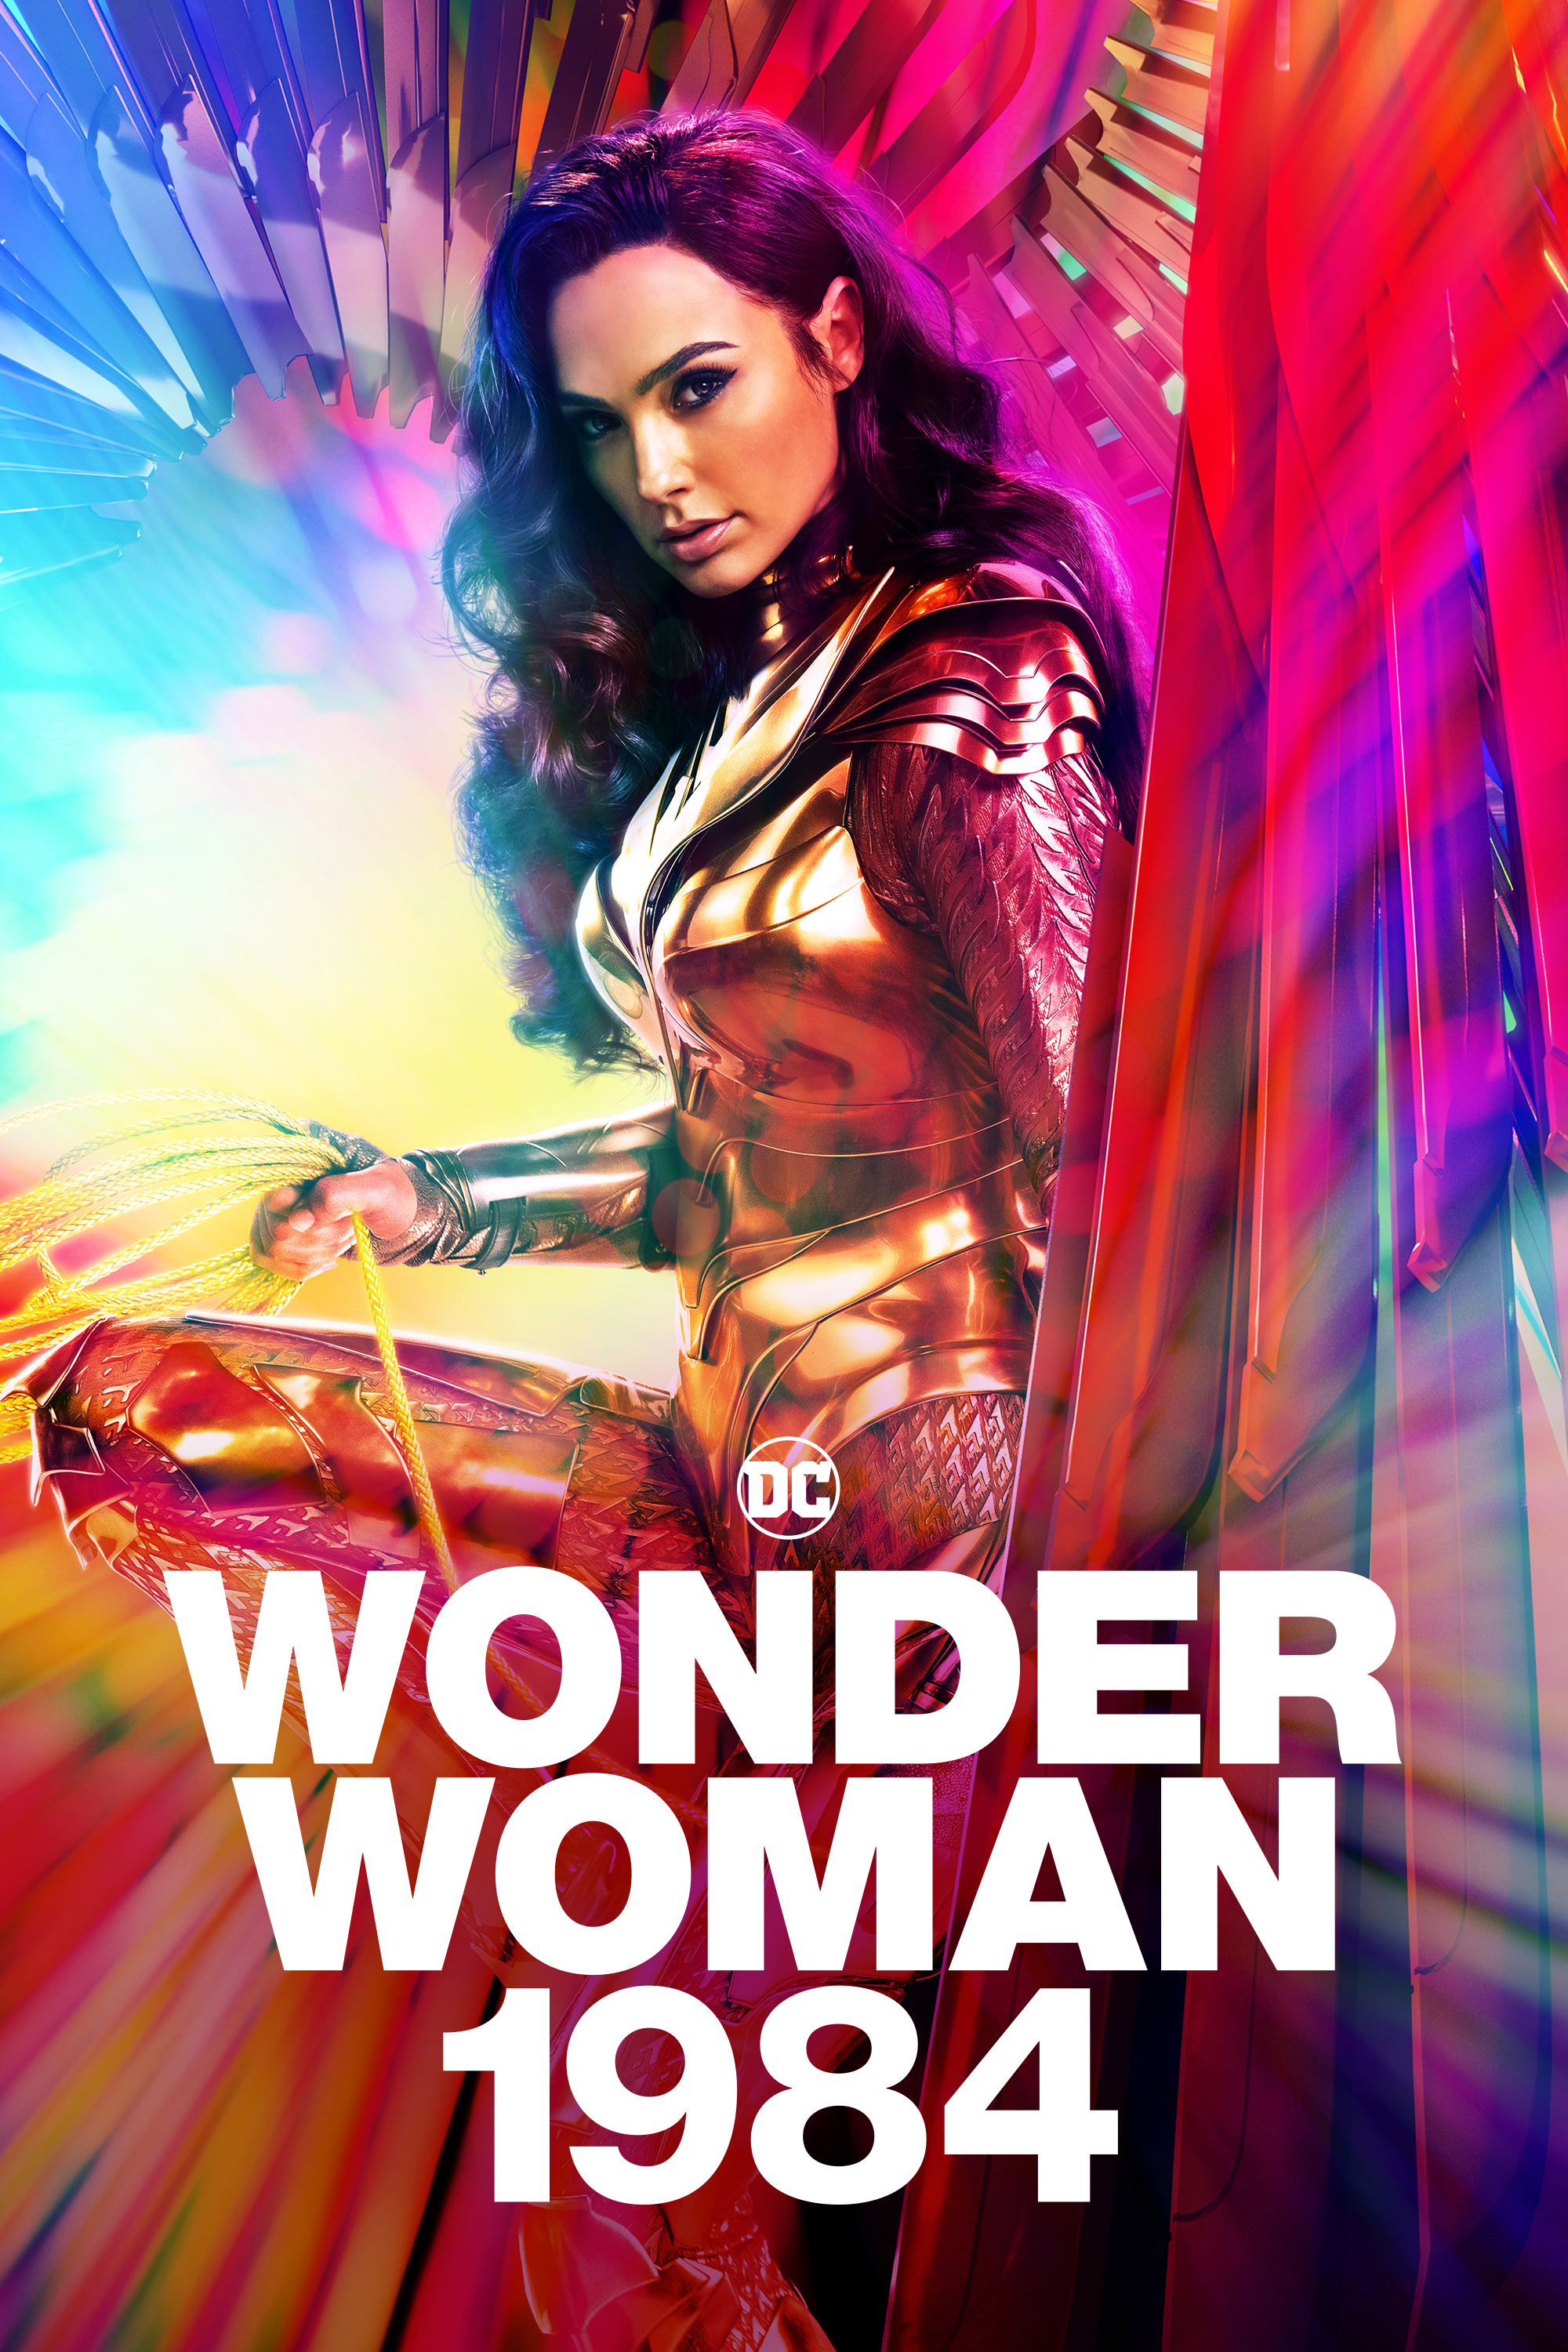 "Wonder Woman 1984"